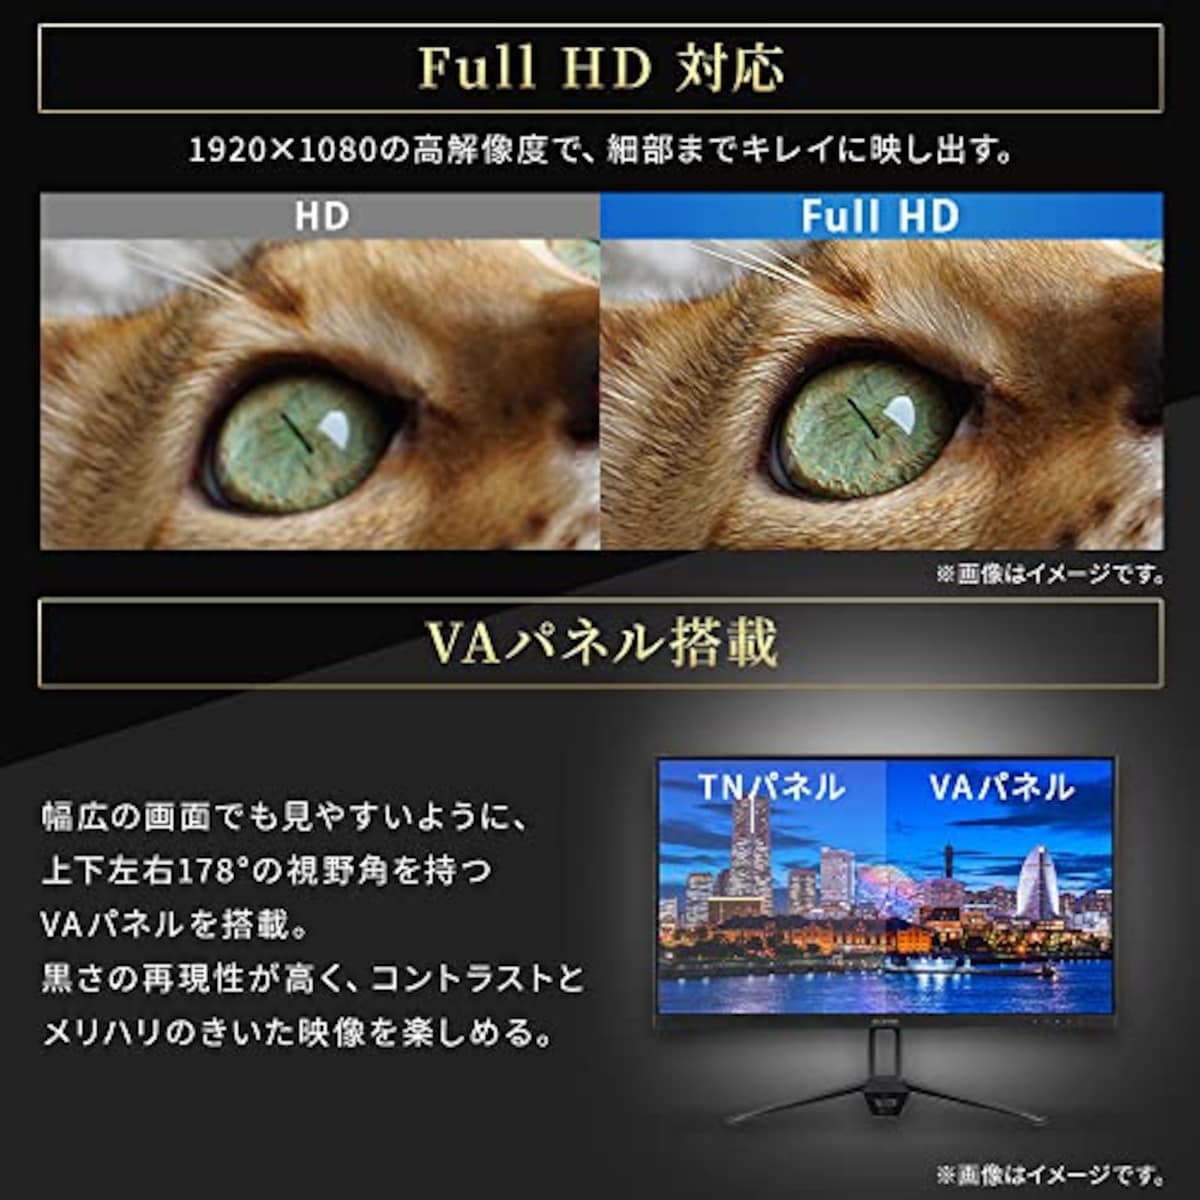  【Amazon.co.jp限定】アイリスオーヤマ モニター 21インチ (メーカー3年保証) スピーカー内蔵 VAパネル HDMI×1 VGA×1 DC IN×1 AUDIO OUT×1 角度調整可能 FHD 1920x1080 60Hz 8ms ブルーライト軽減 フレームレス VESA対応 壁掛け アンチグレアパネル ディスプレイ pcモニター 液晶モニター DT-FF213S-B画像4 